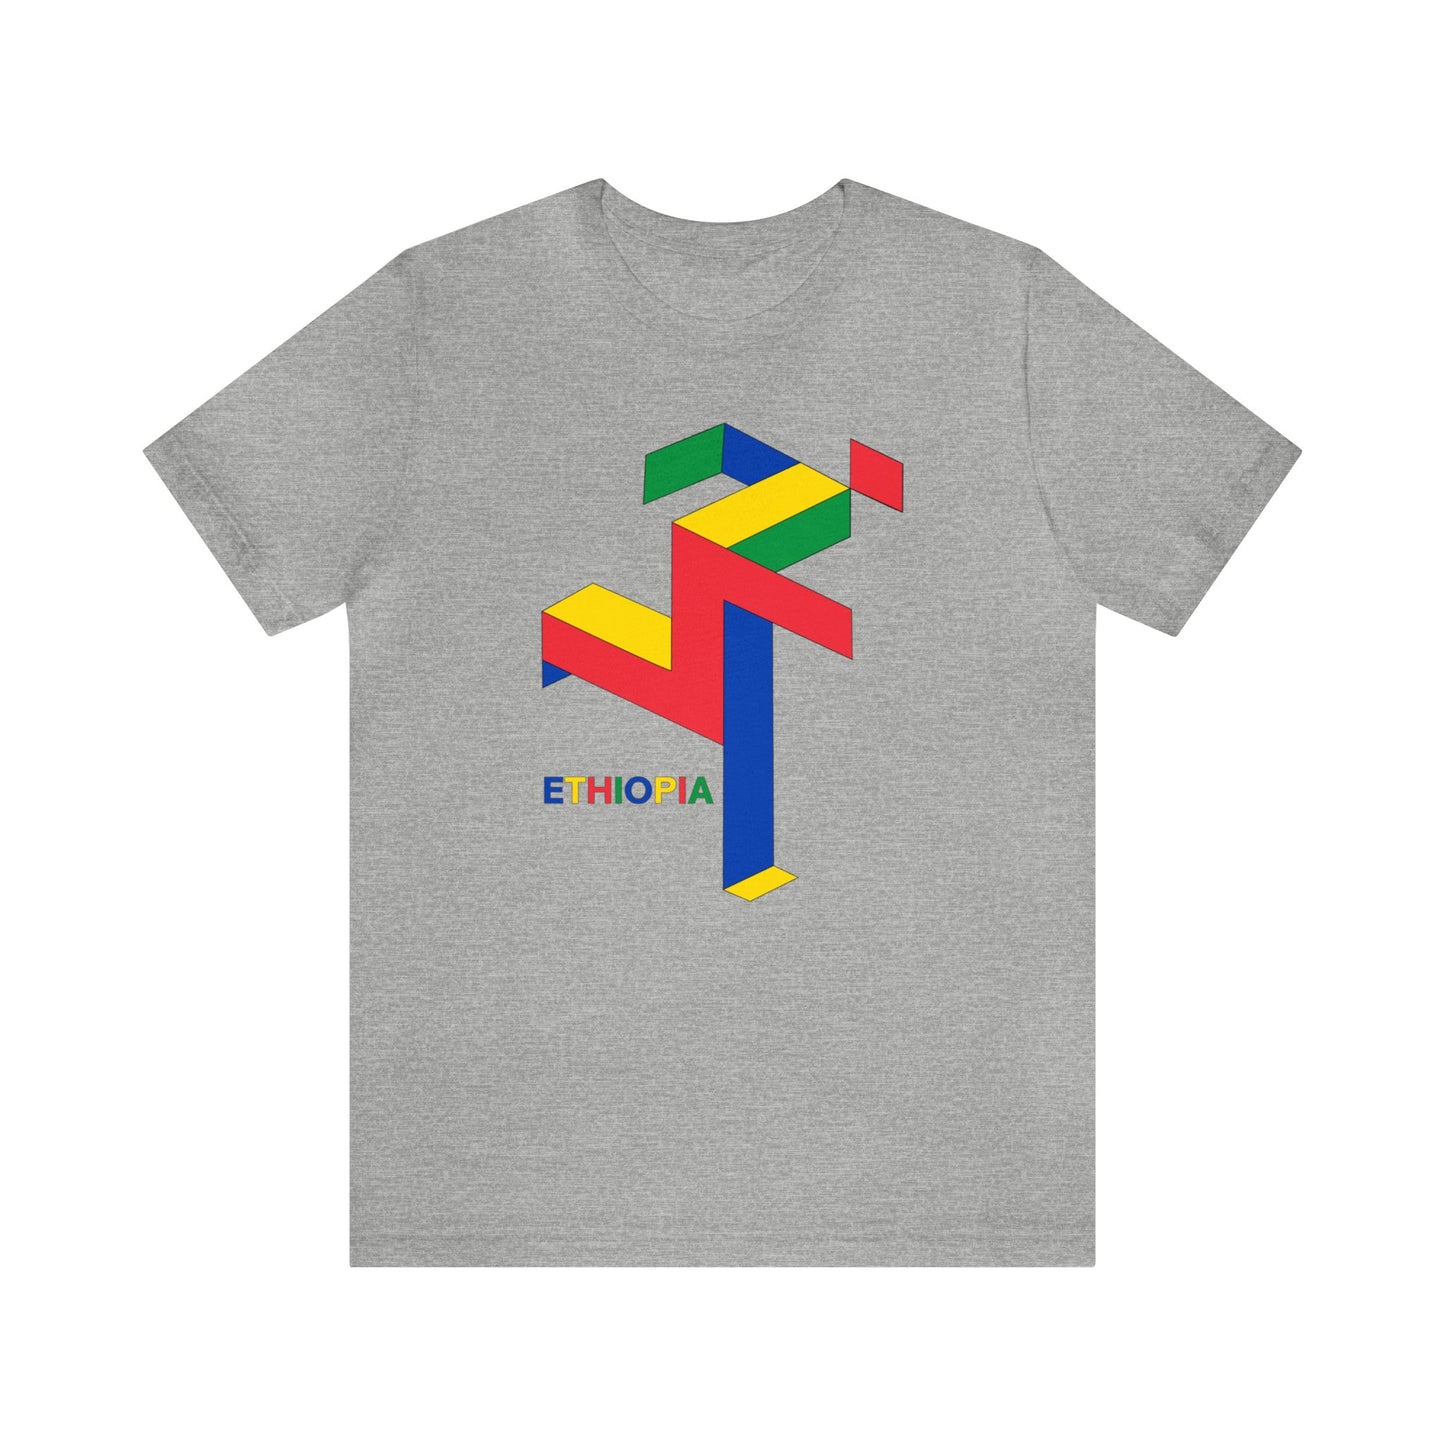 Ethiopian Runner - Unisex T-Shirt